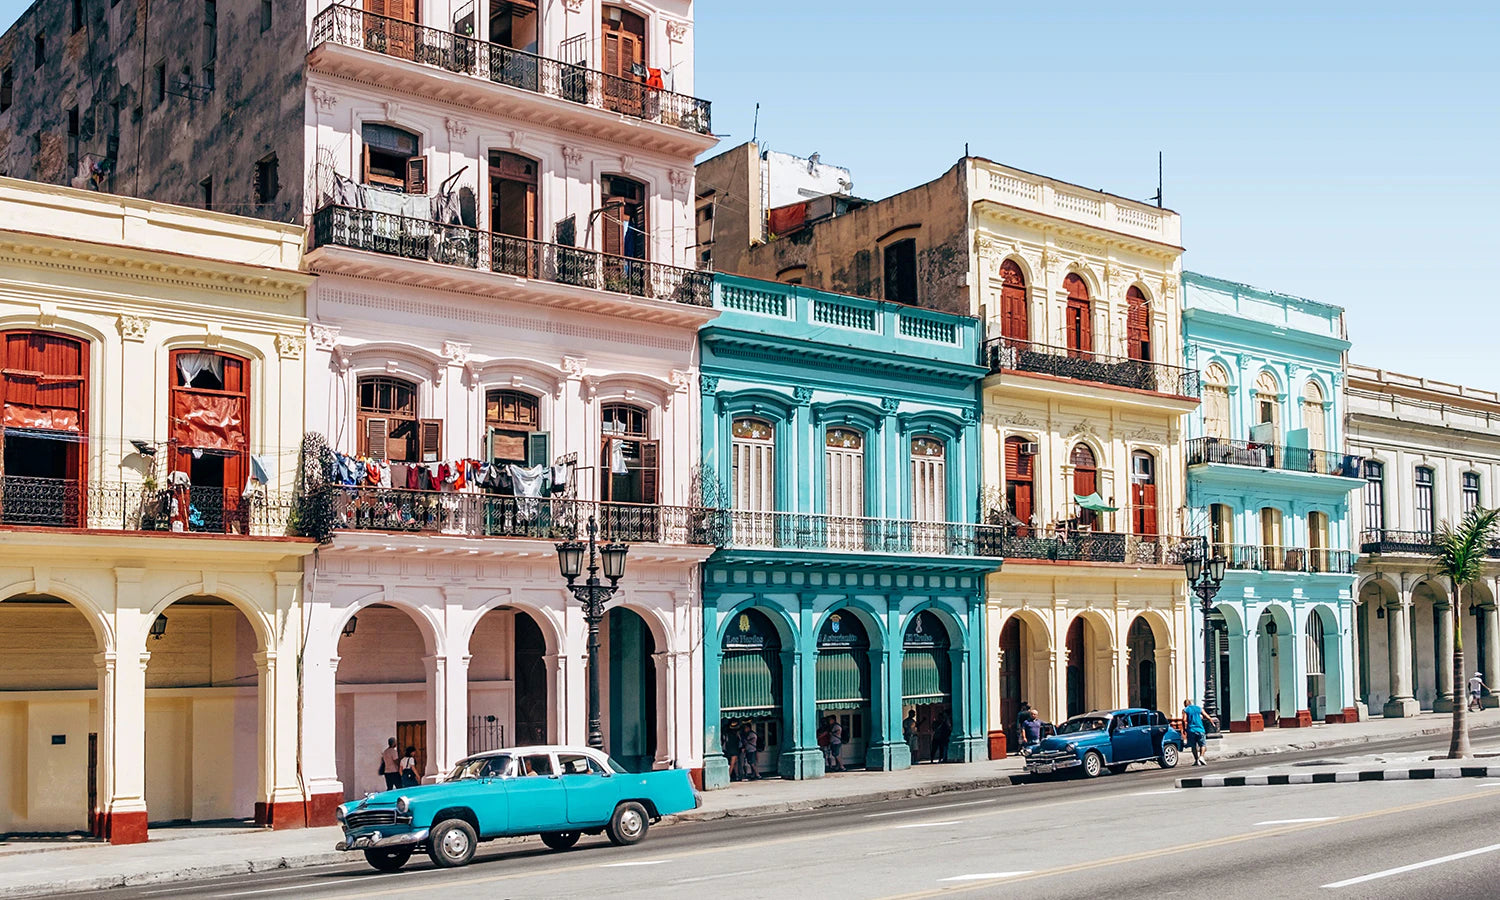 Havana - City of Columns